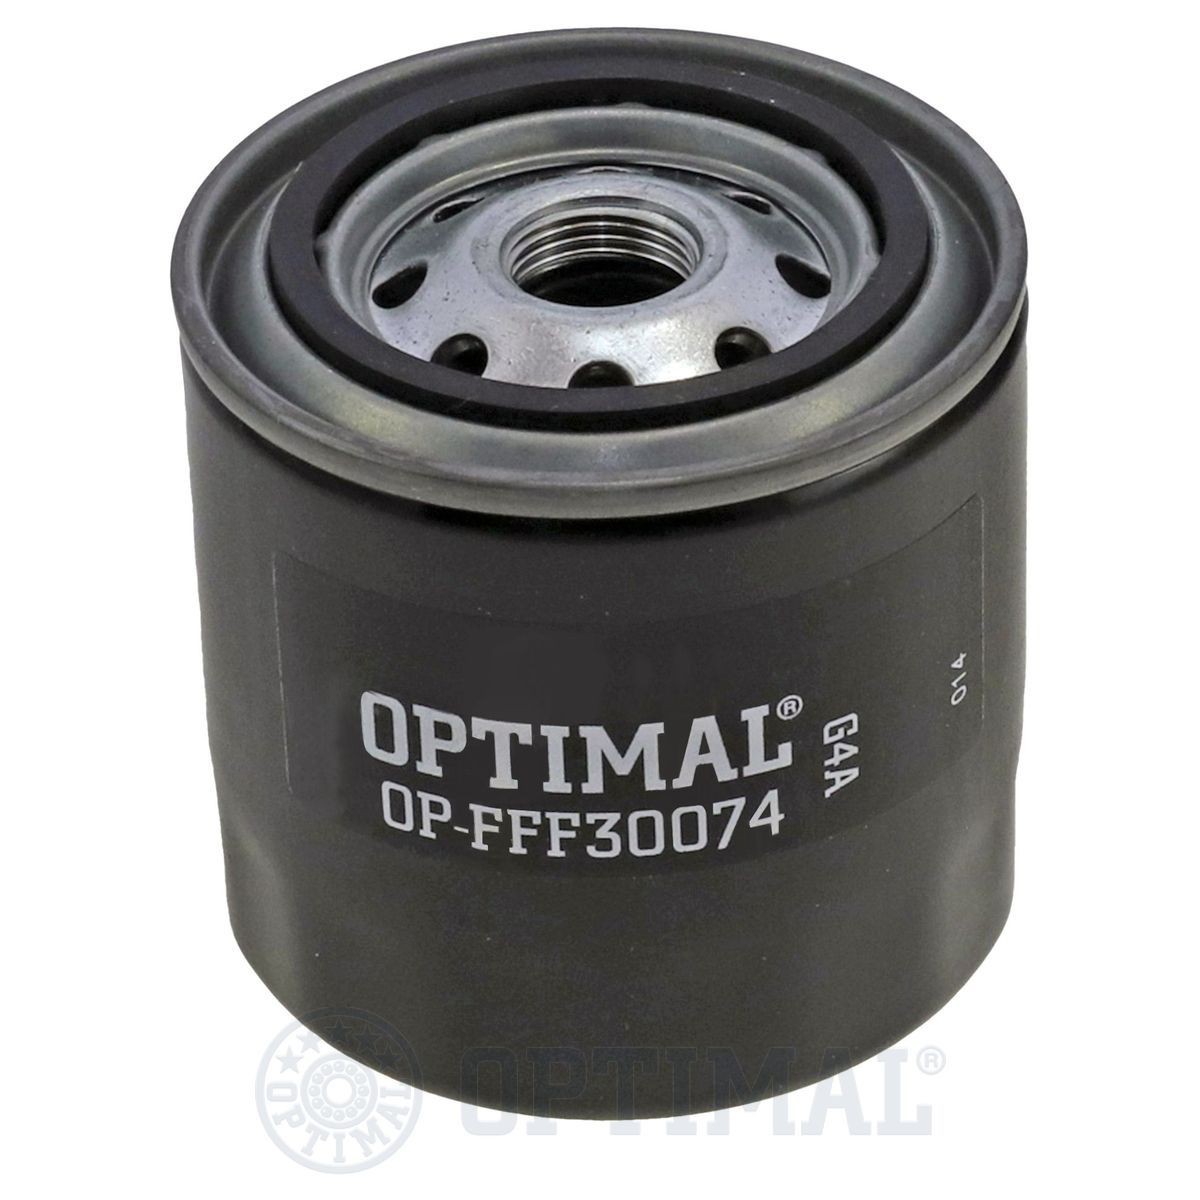 OPTIMAL OP-FFF30074 Fuel filter 23302 56021